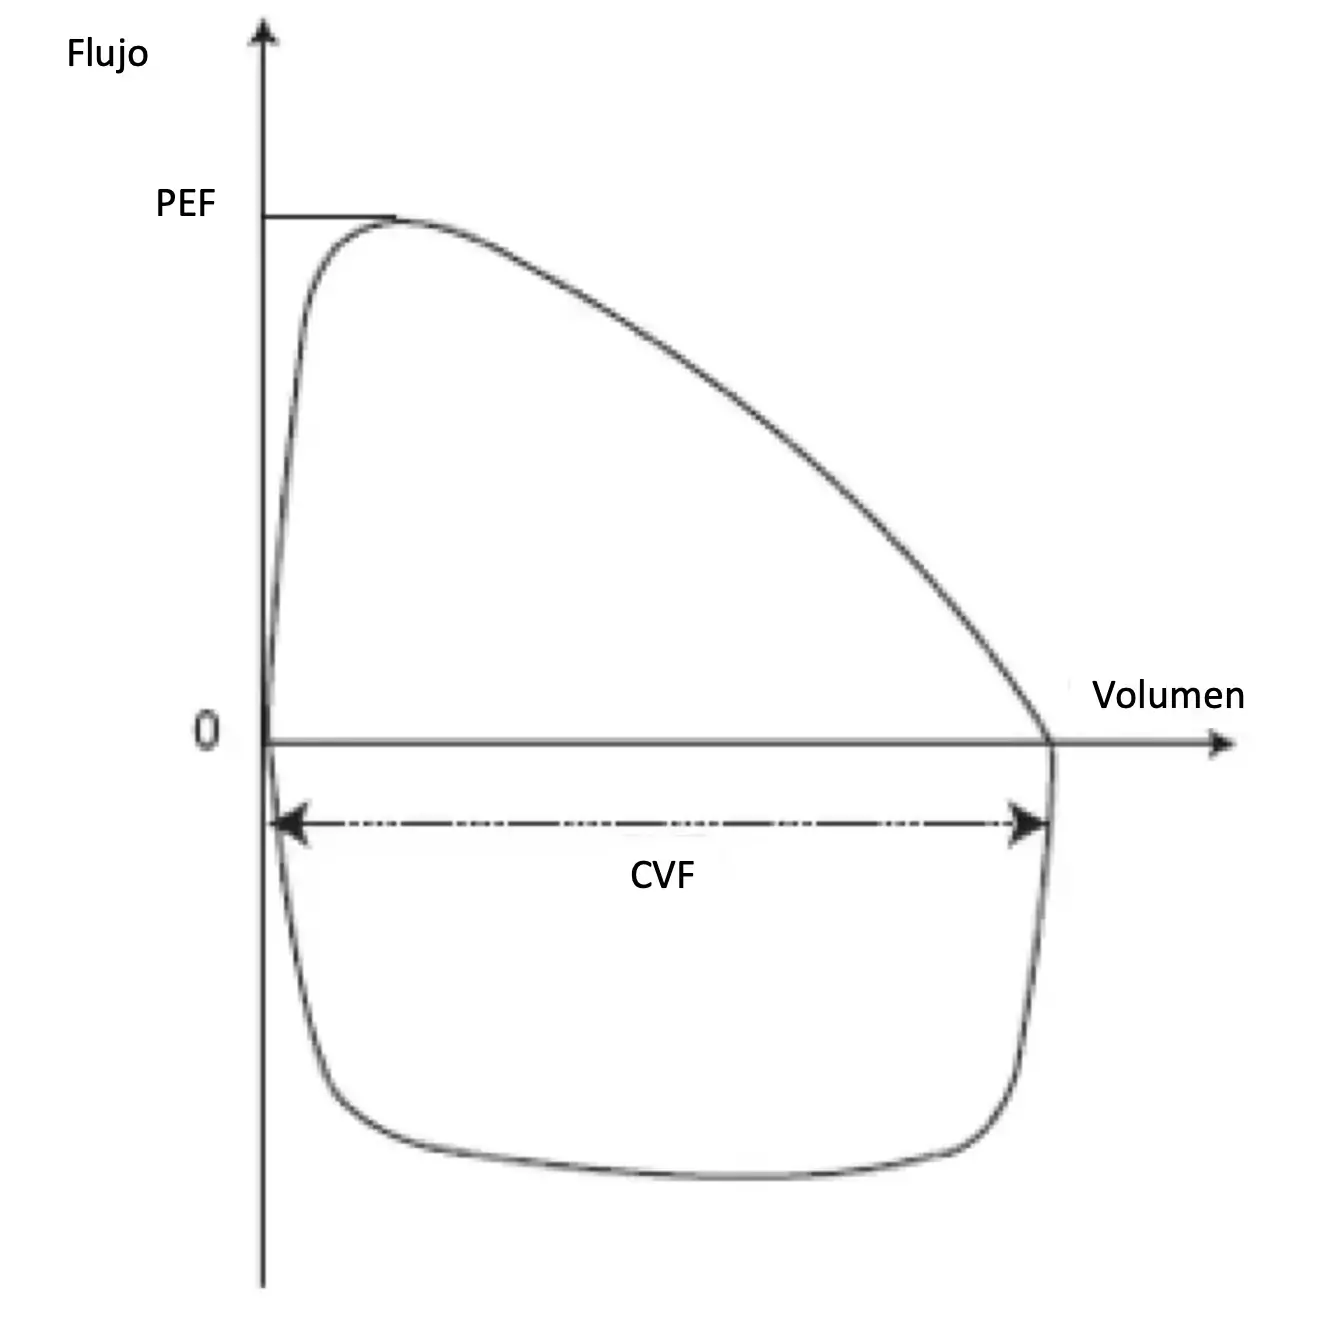 Curva flujo-volumen. La espiración está representada por la curva superior, la inspiración por la curva inferior. CVF = capacidad vital forzada, FEM = flujo espiratorio máximo.